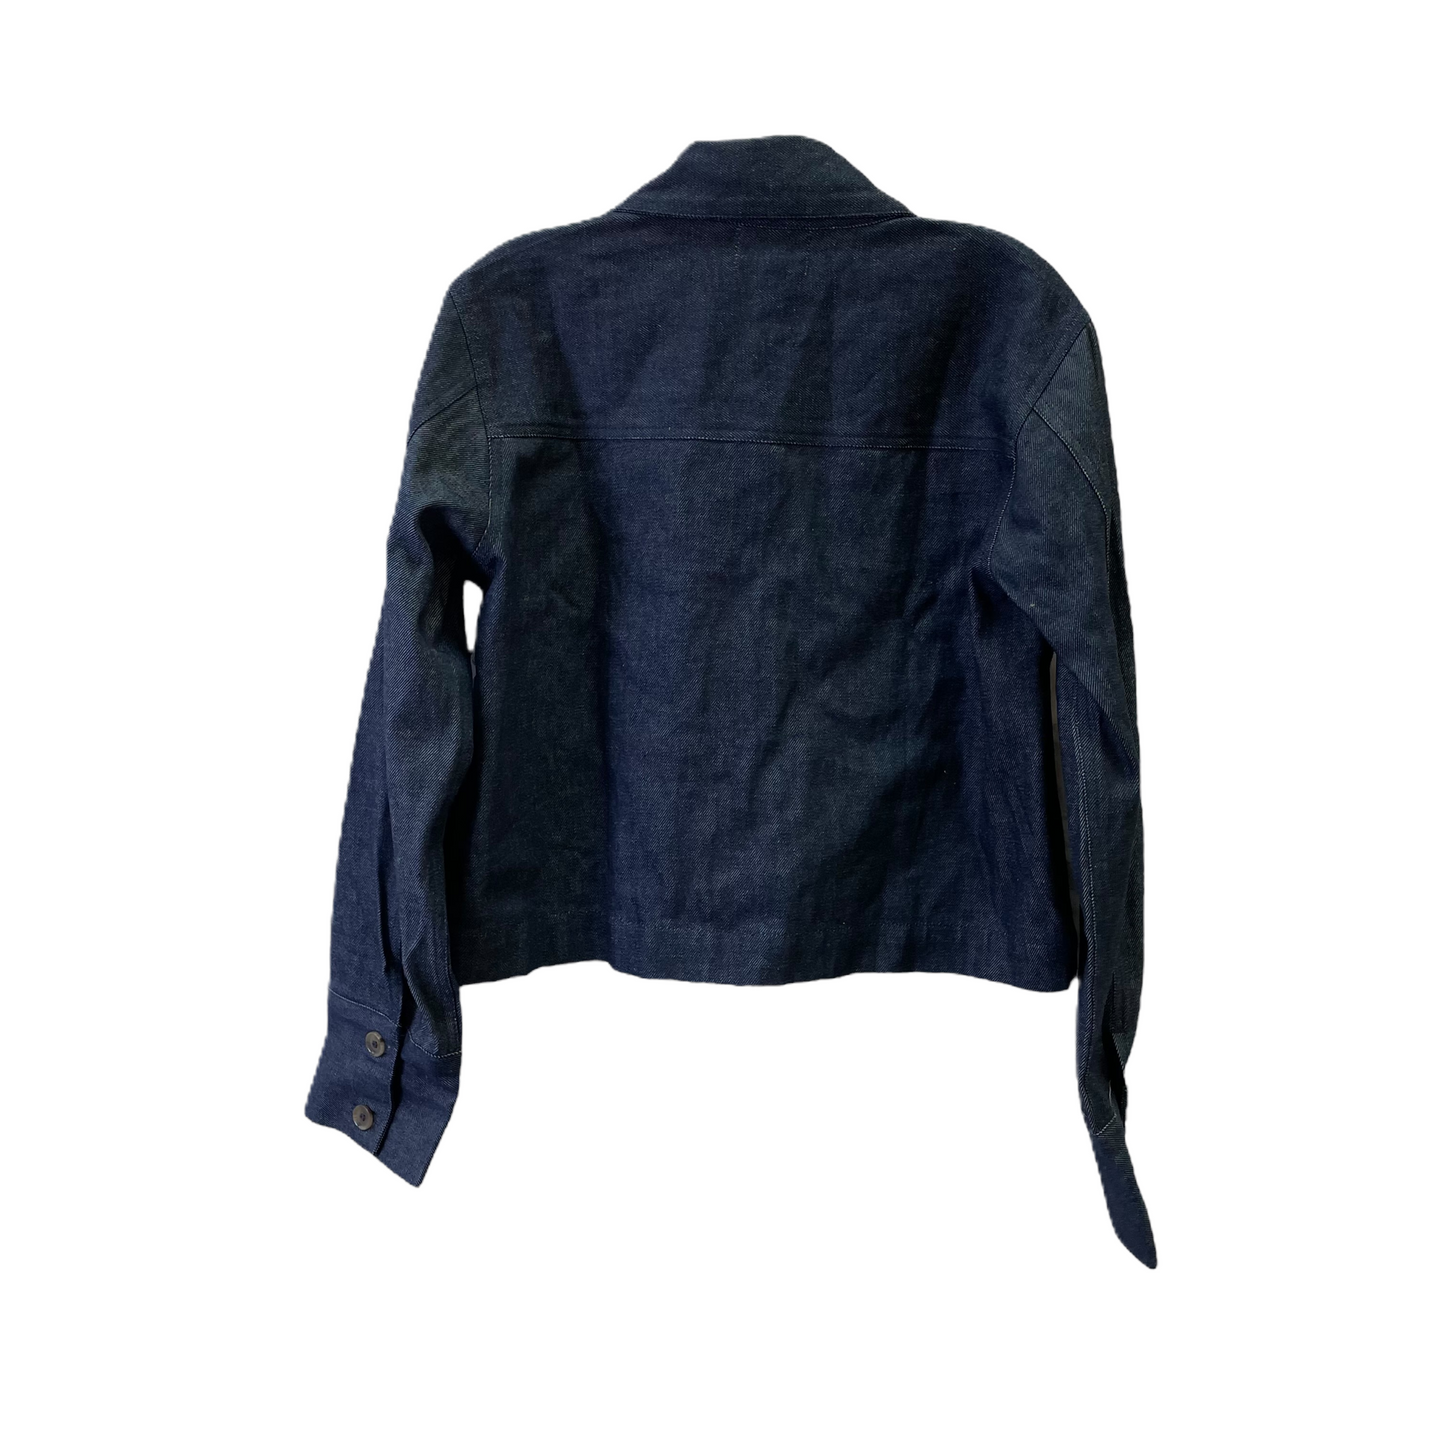 Blue Jacket Denim By Laude The Label, Size: L